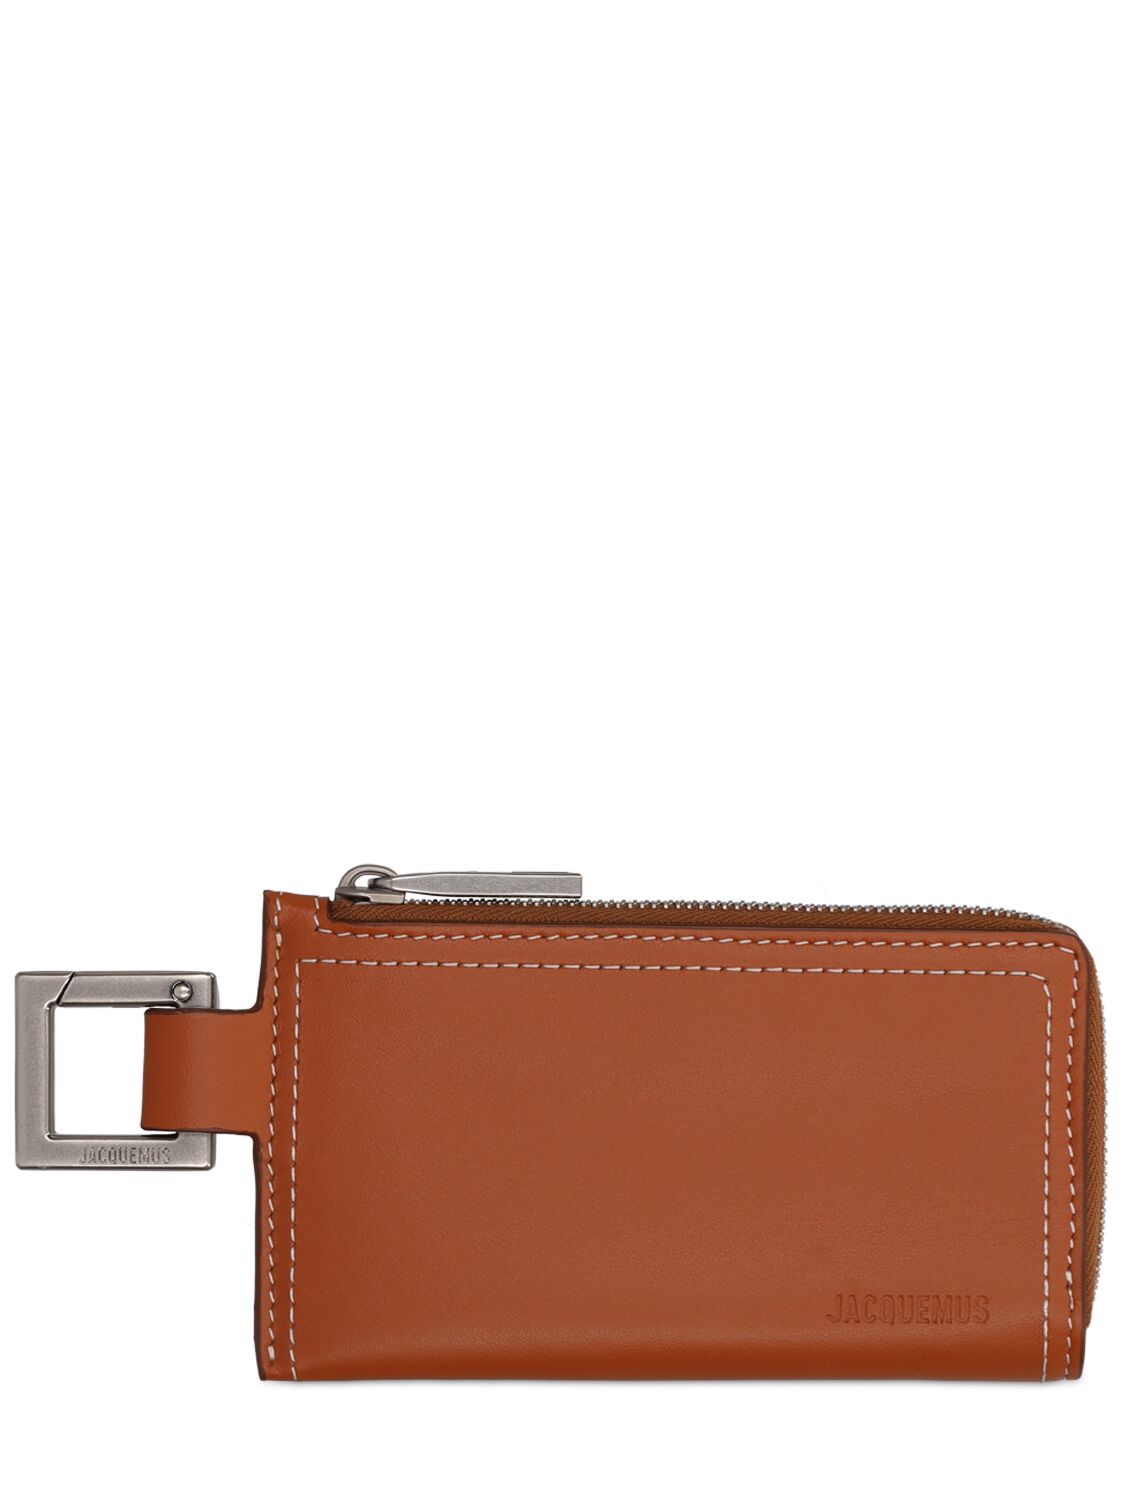 Jacquemus Le Porte-zippé Cuerda Leather Wallet In Light Brown